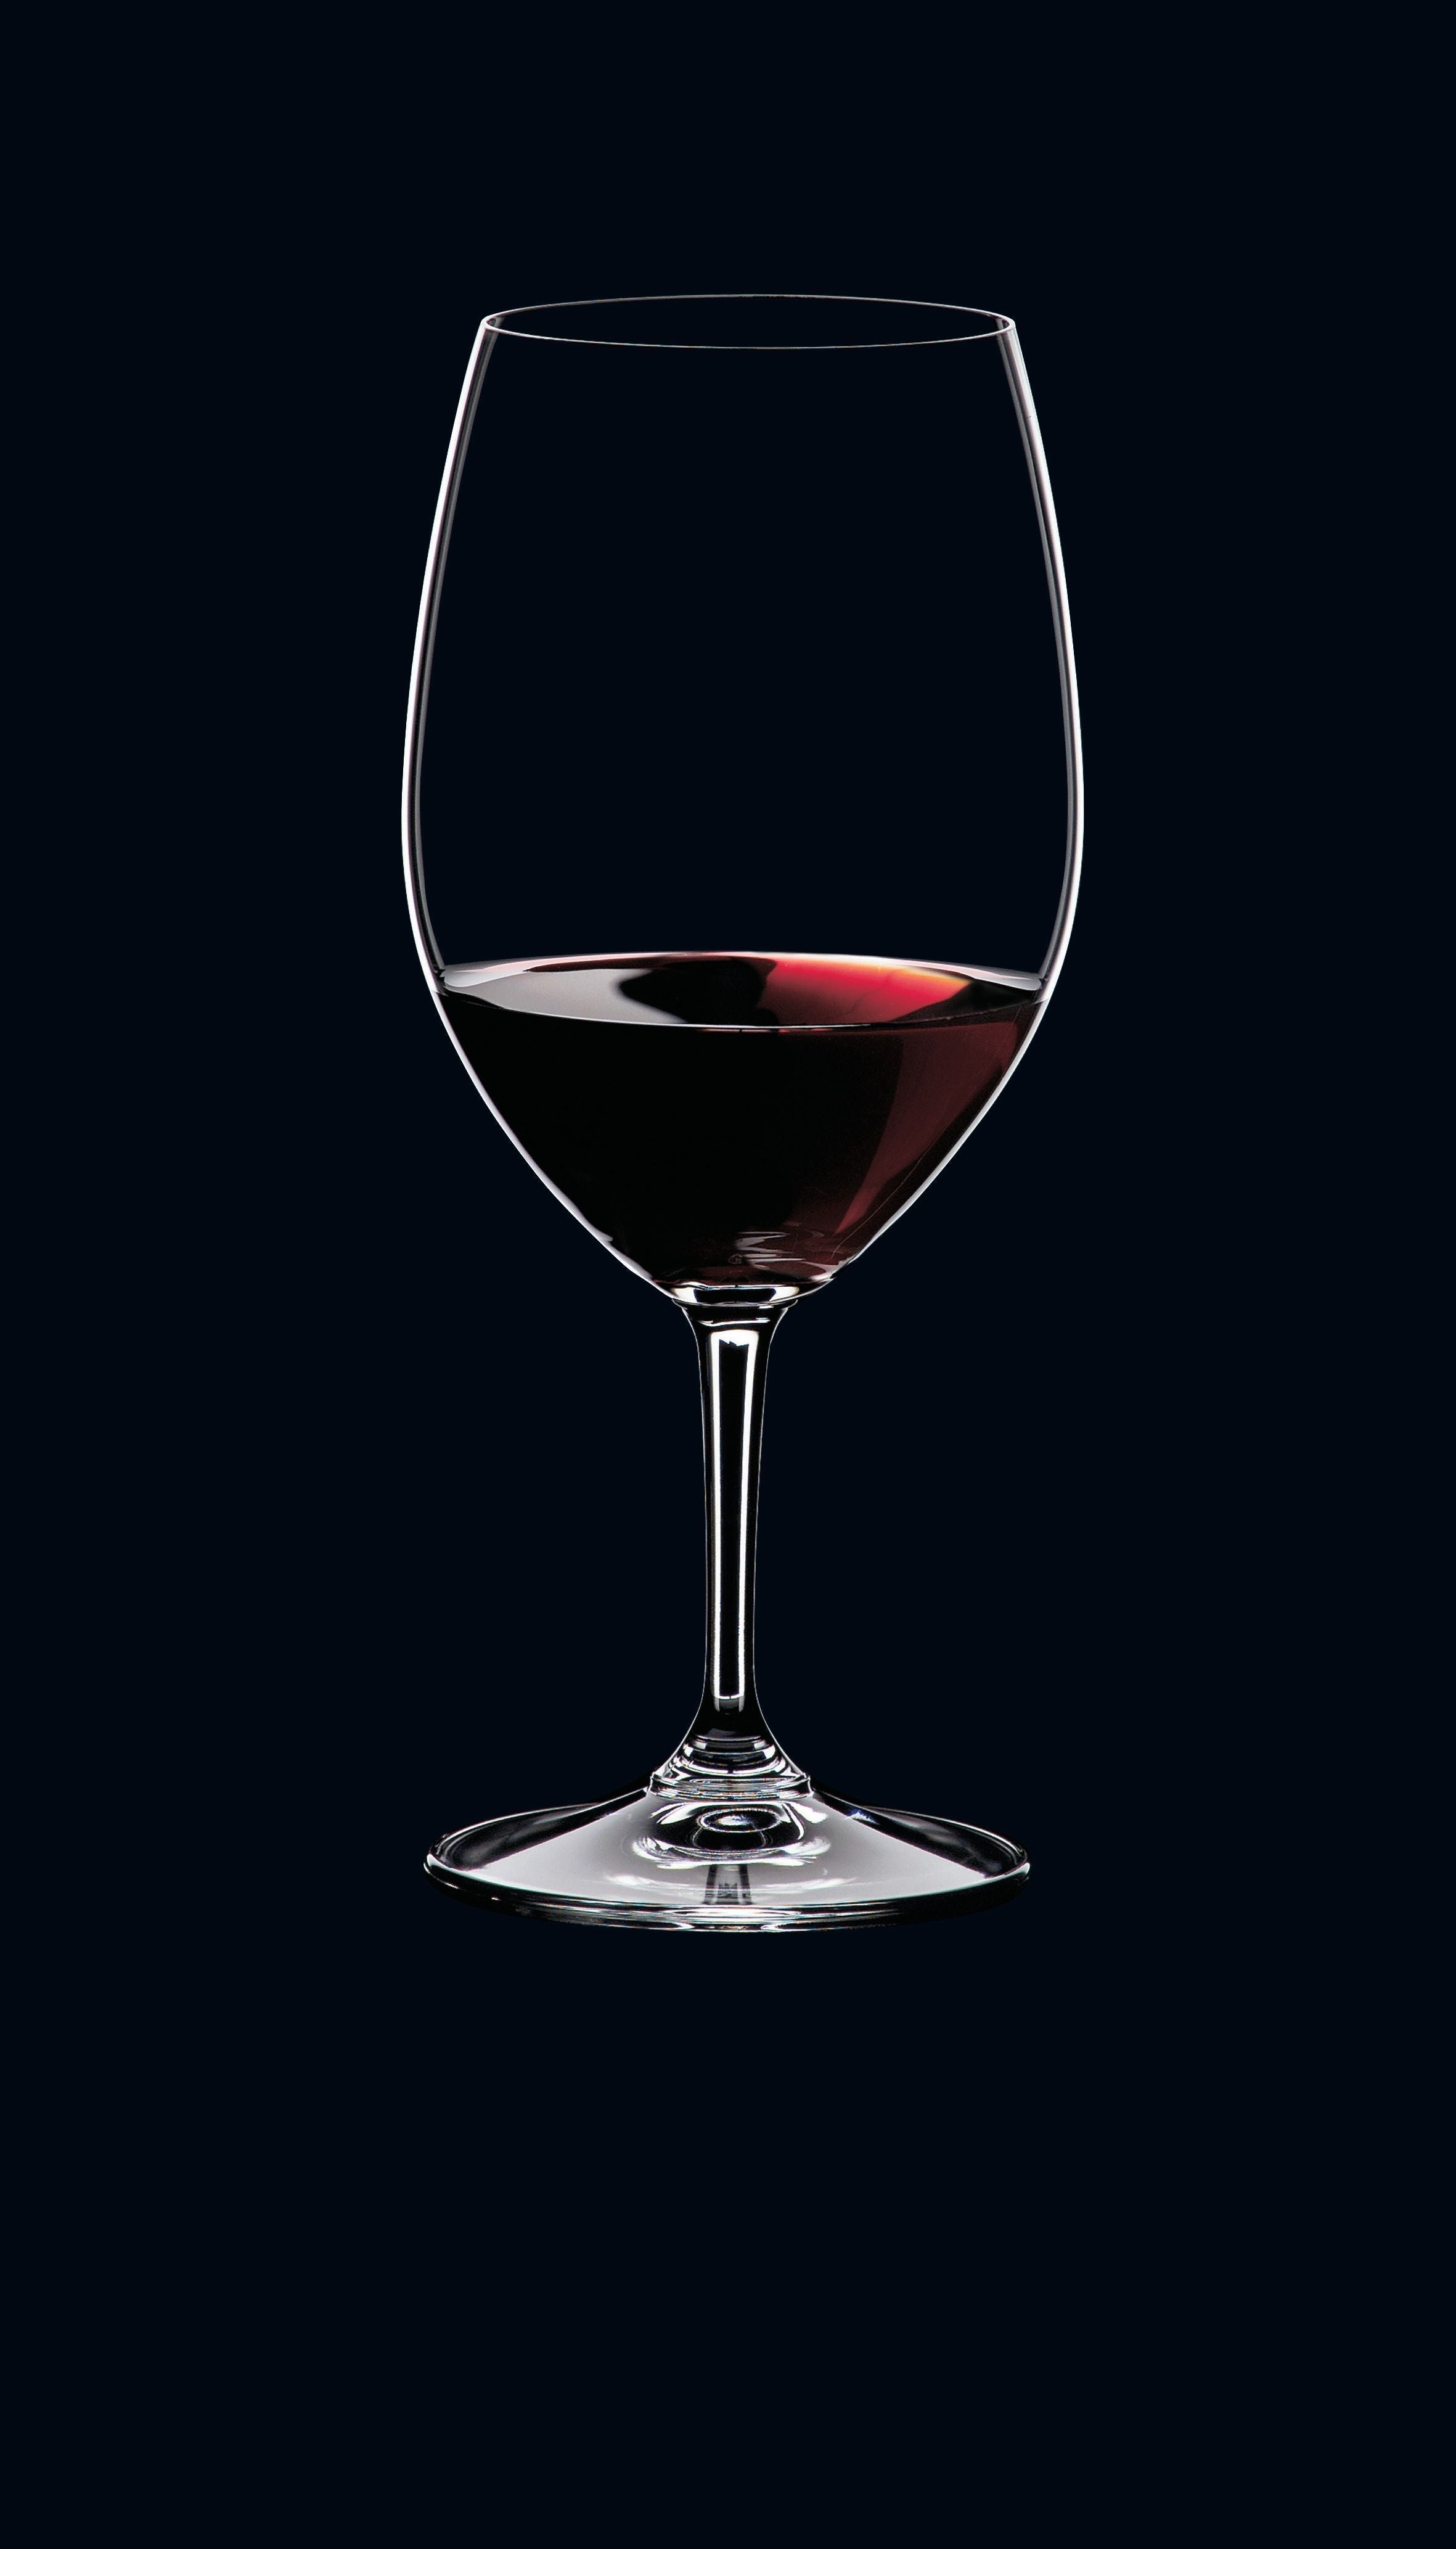 Nachtmann VI Vino Bordeaux Glass 610 ml, ensemble de 4